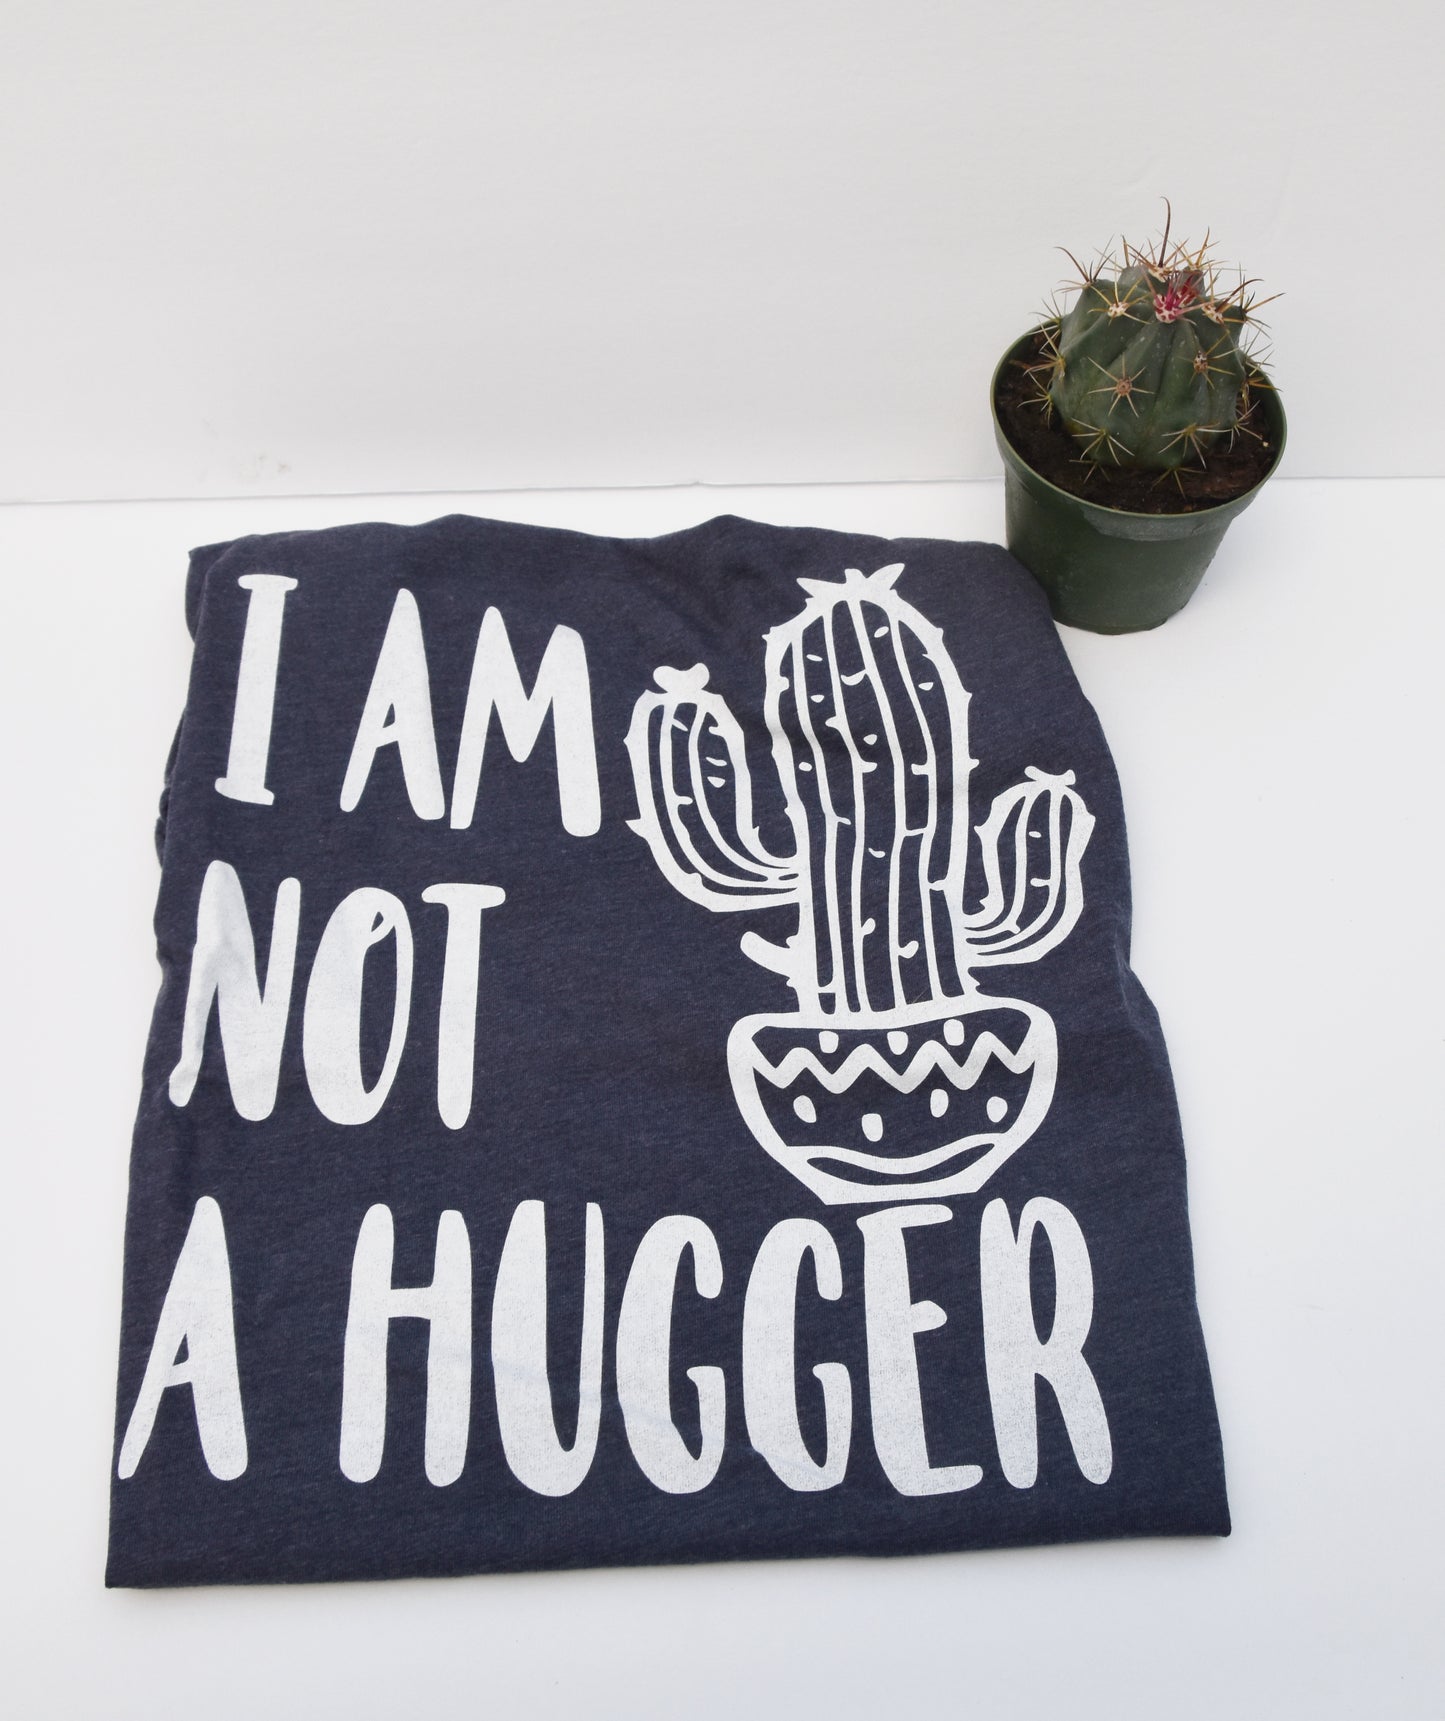 "I am not a hugger" t-shirt